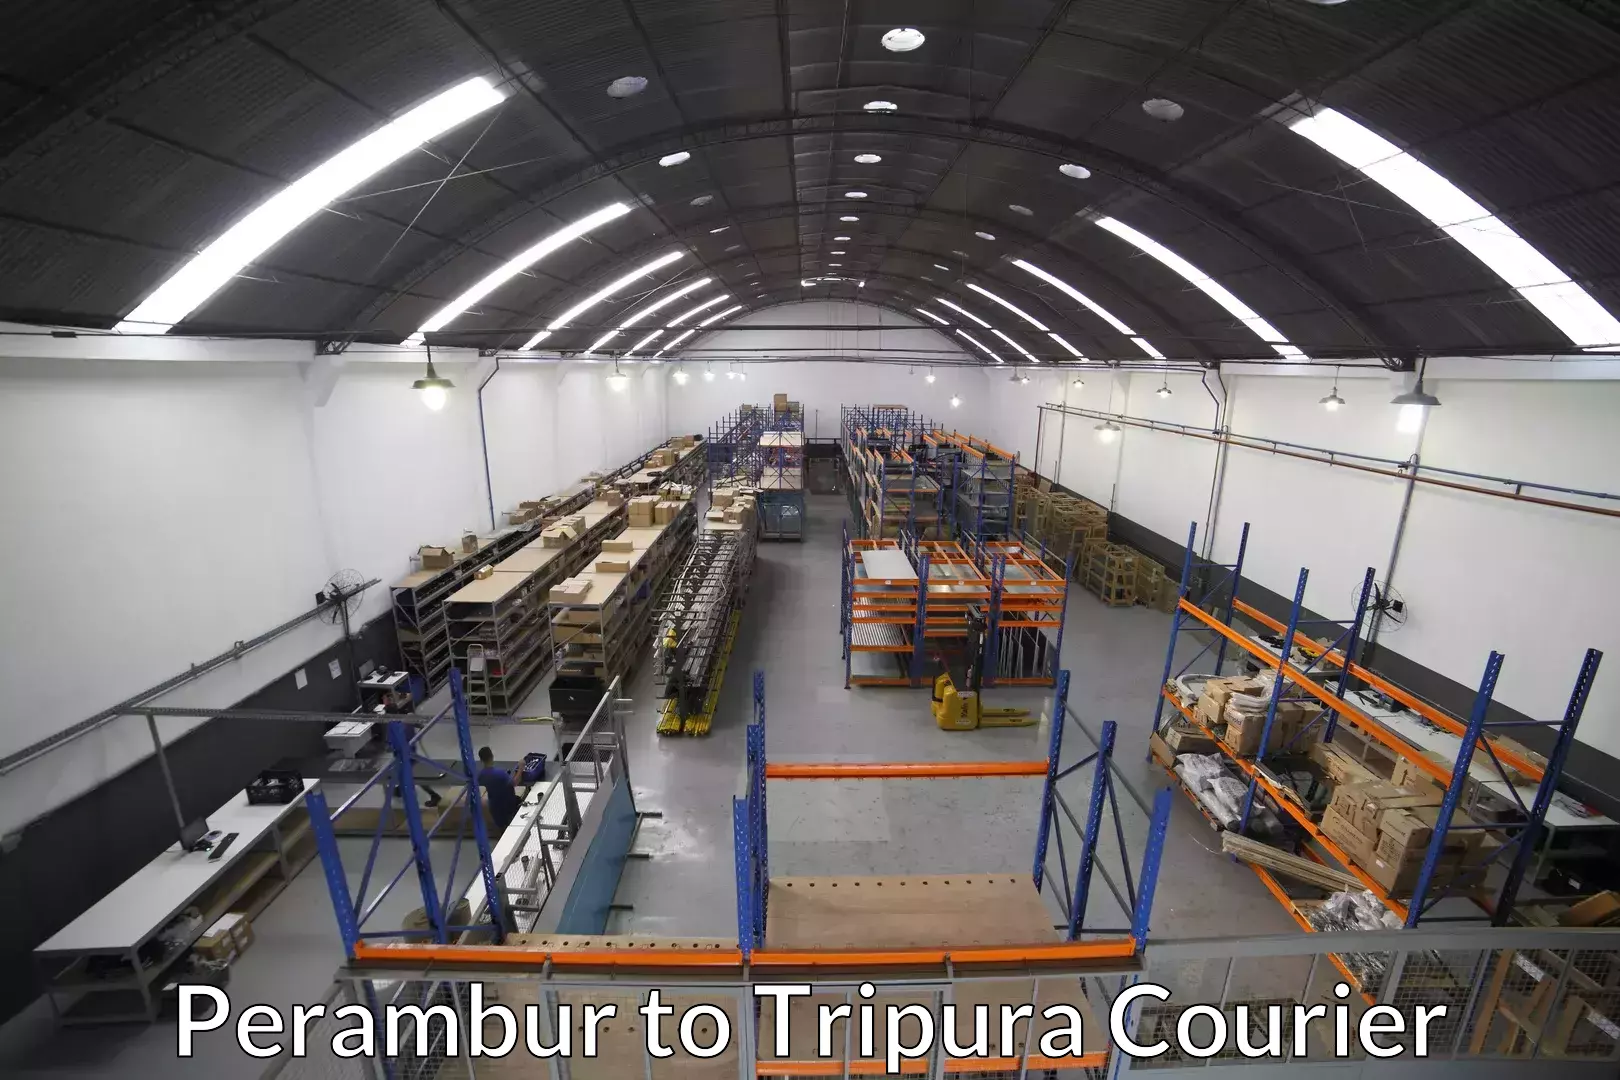 Efficient relocation services Perambur to Tripura